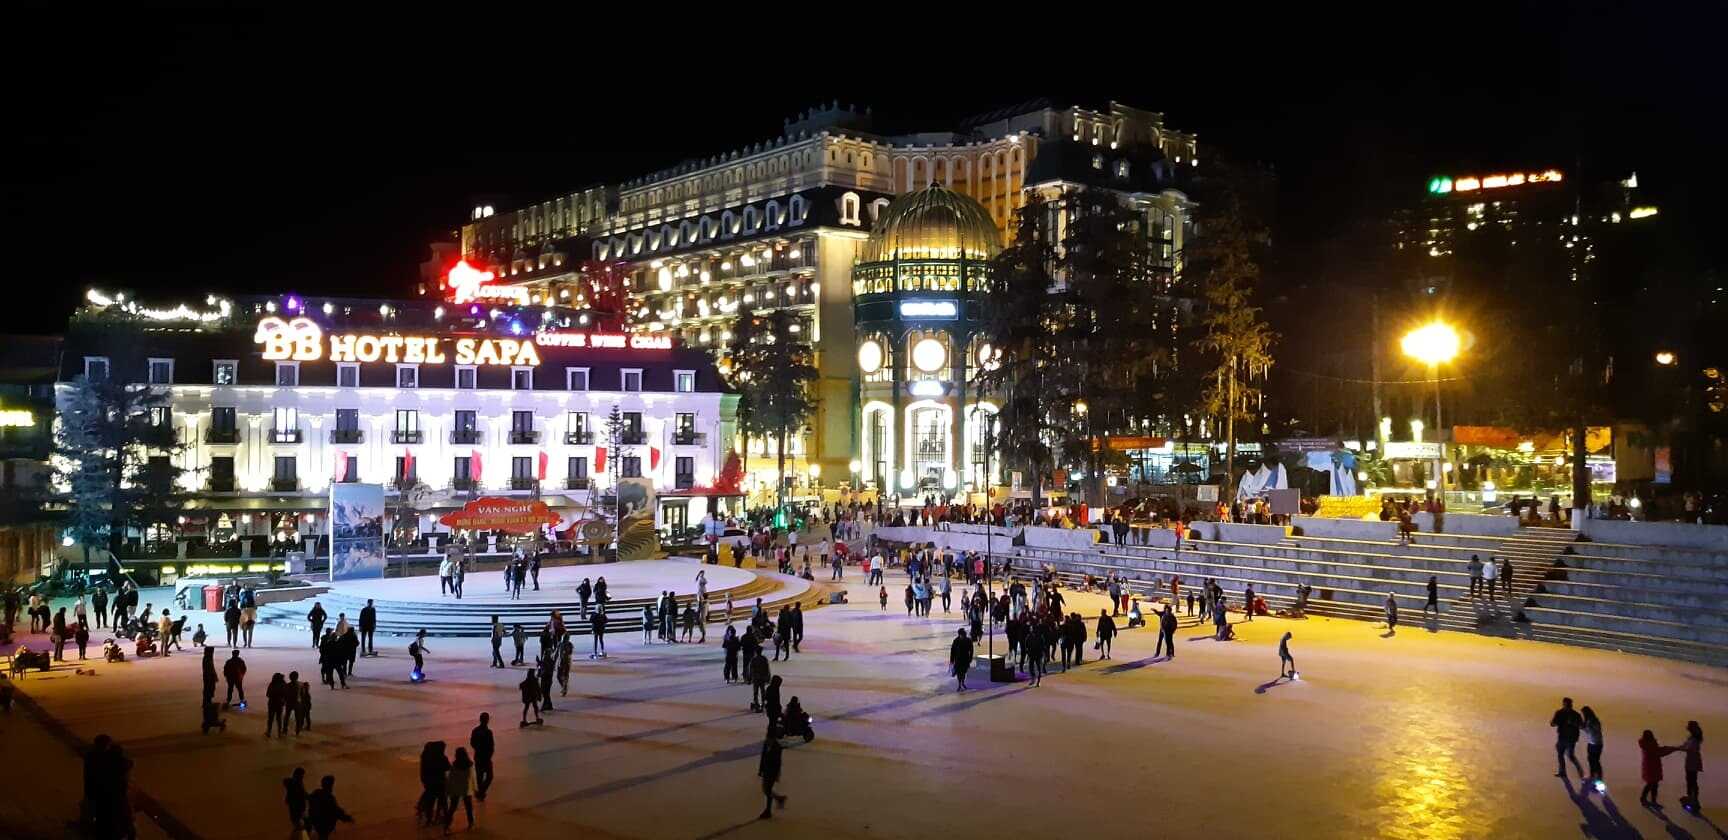 Sapa Main Square